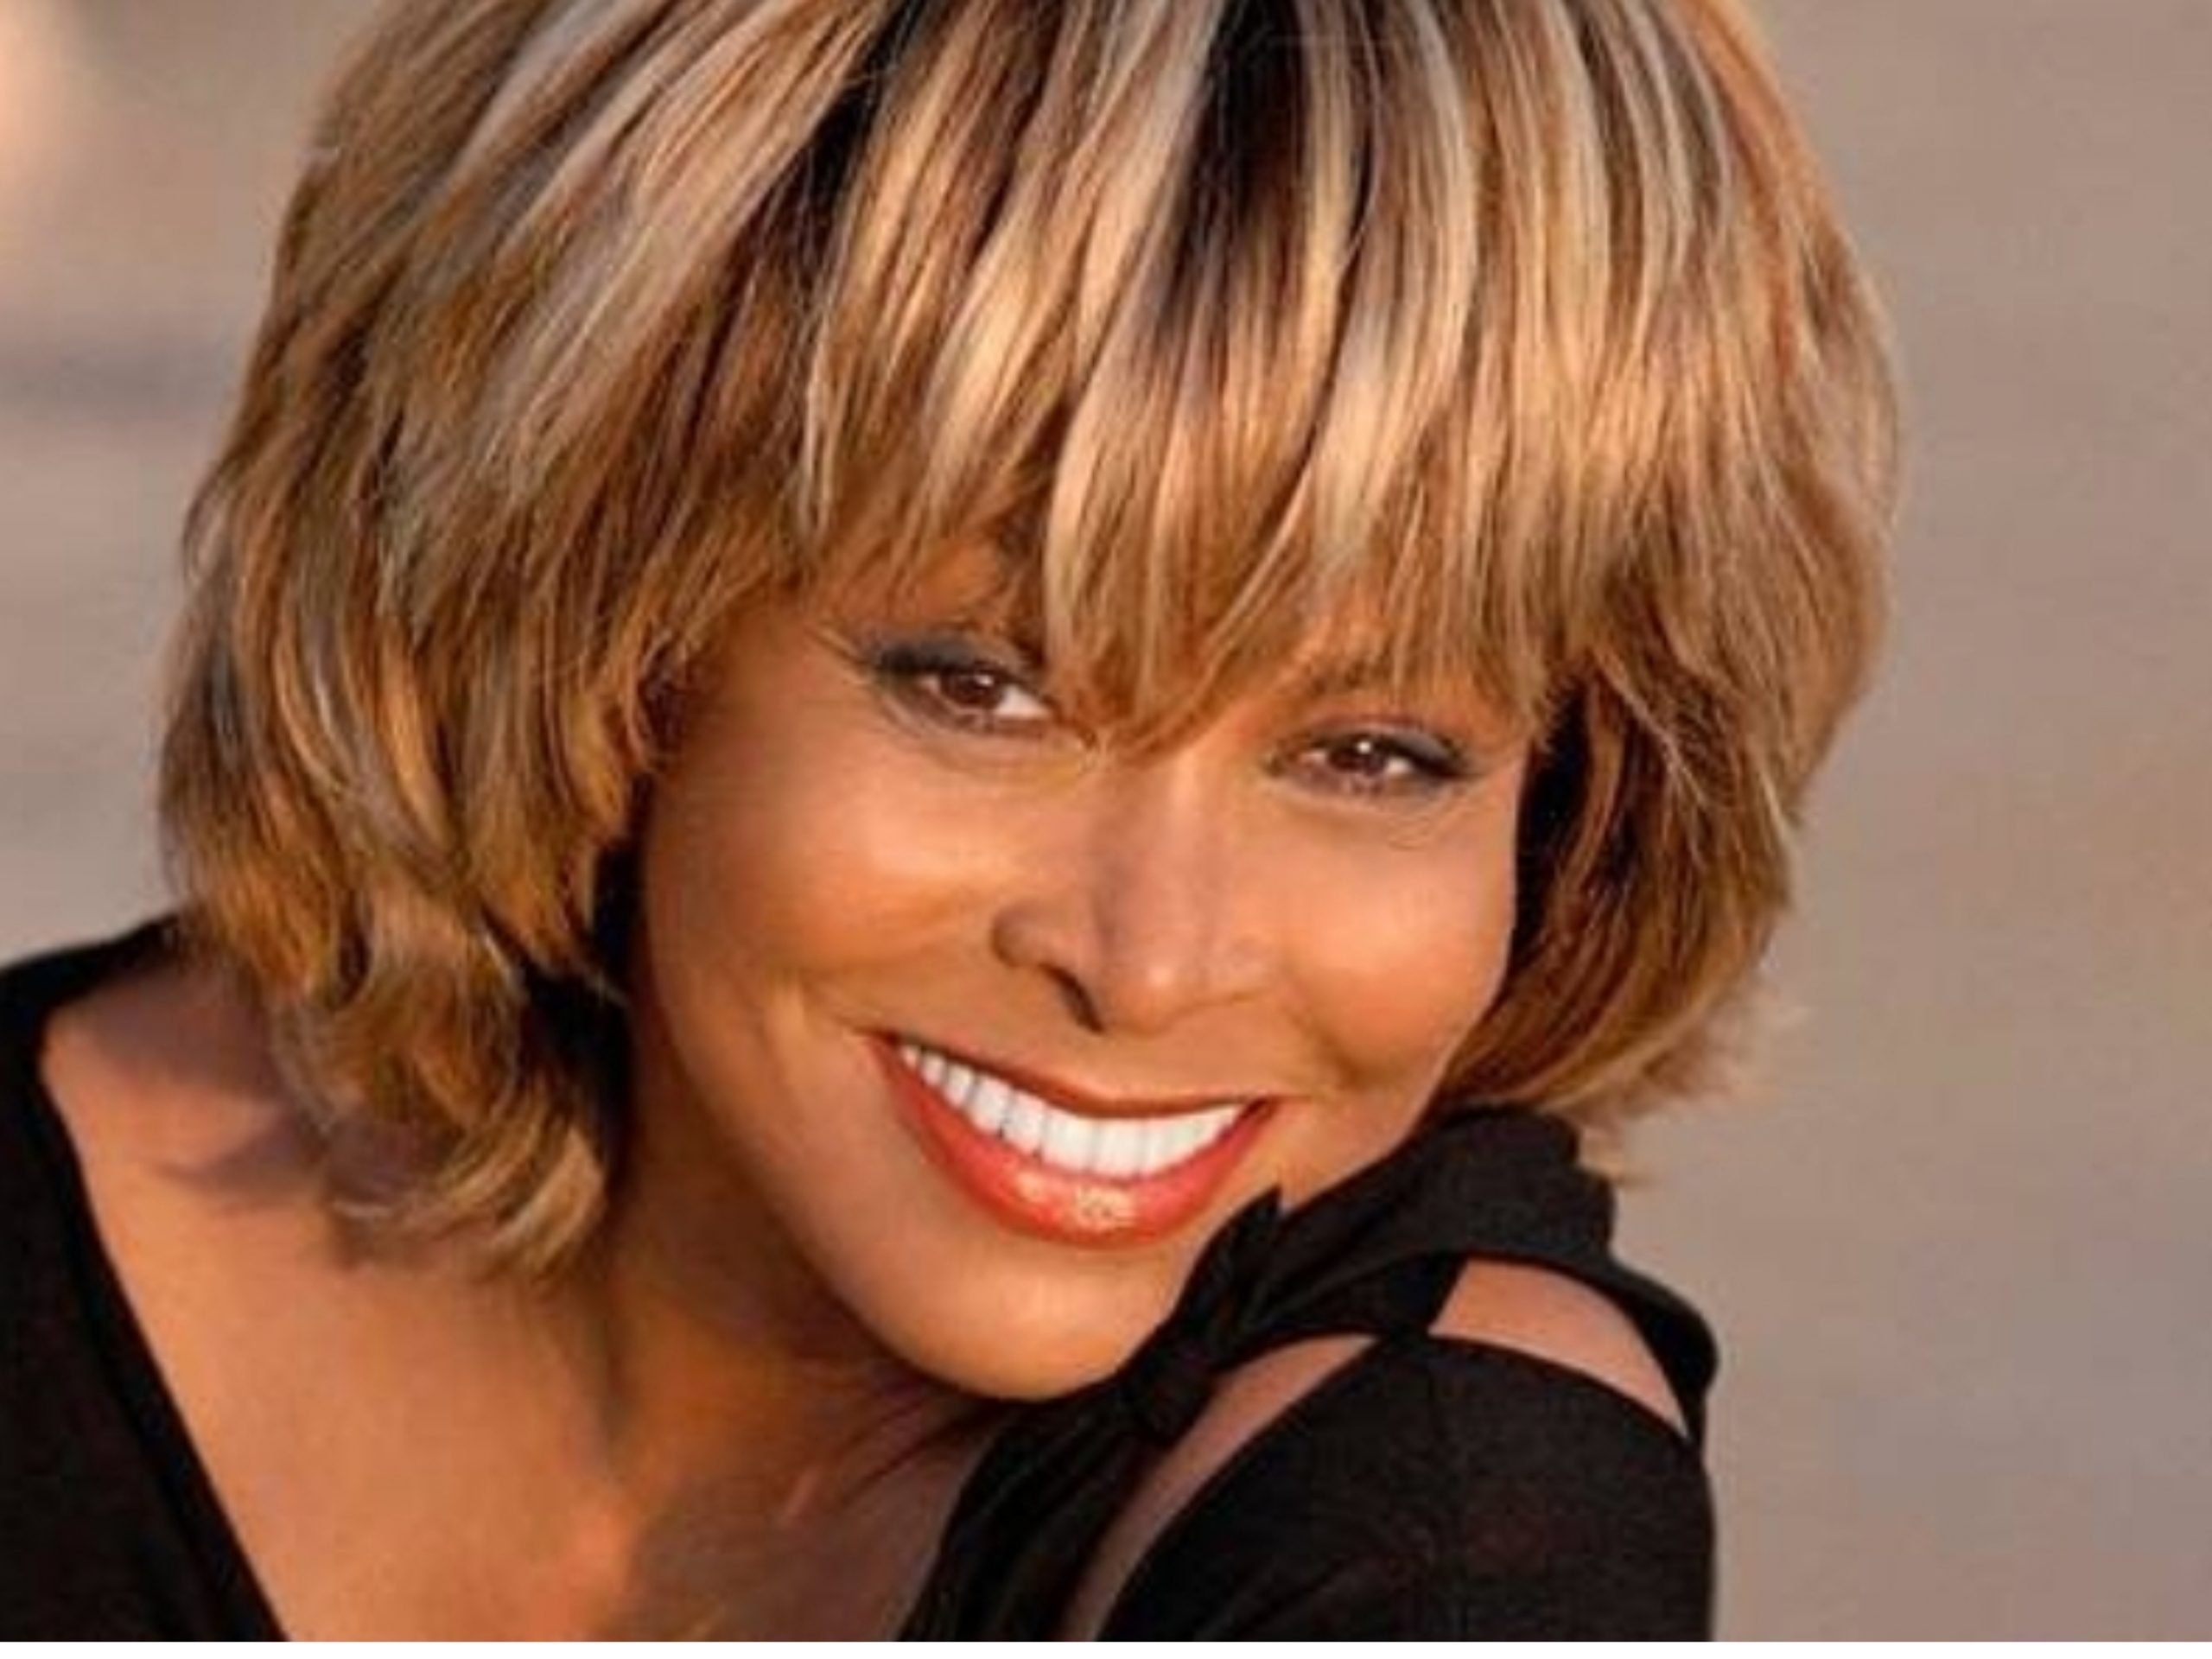 Tina Turner Passes Away at 83 After “Long Illness”